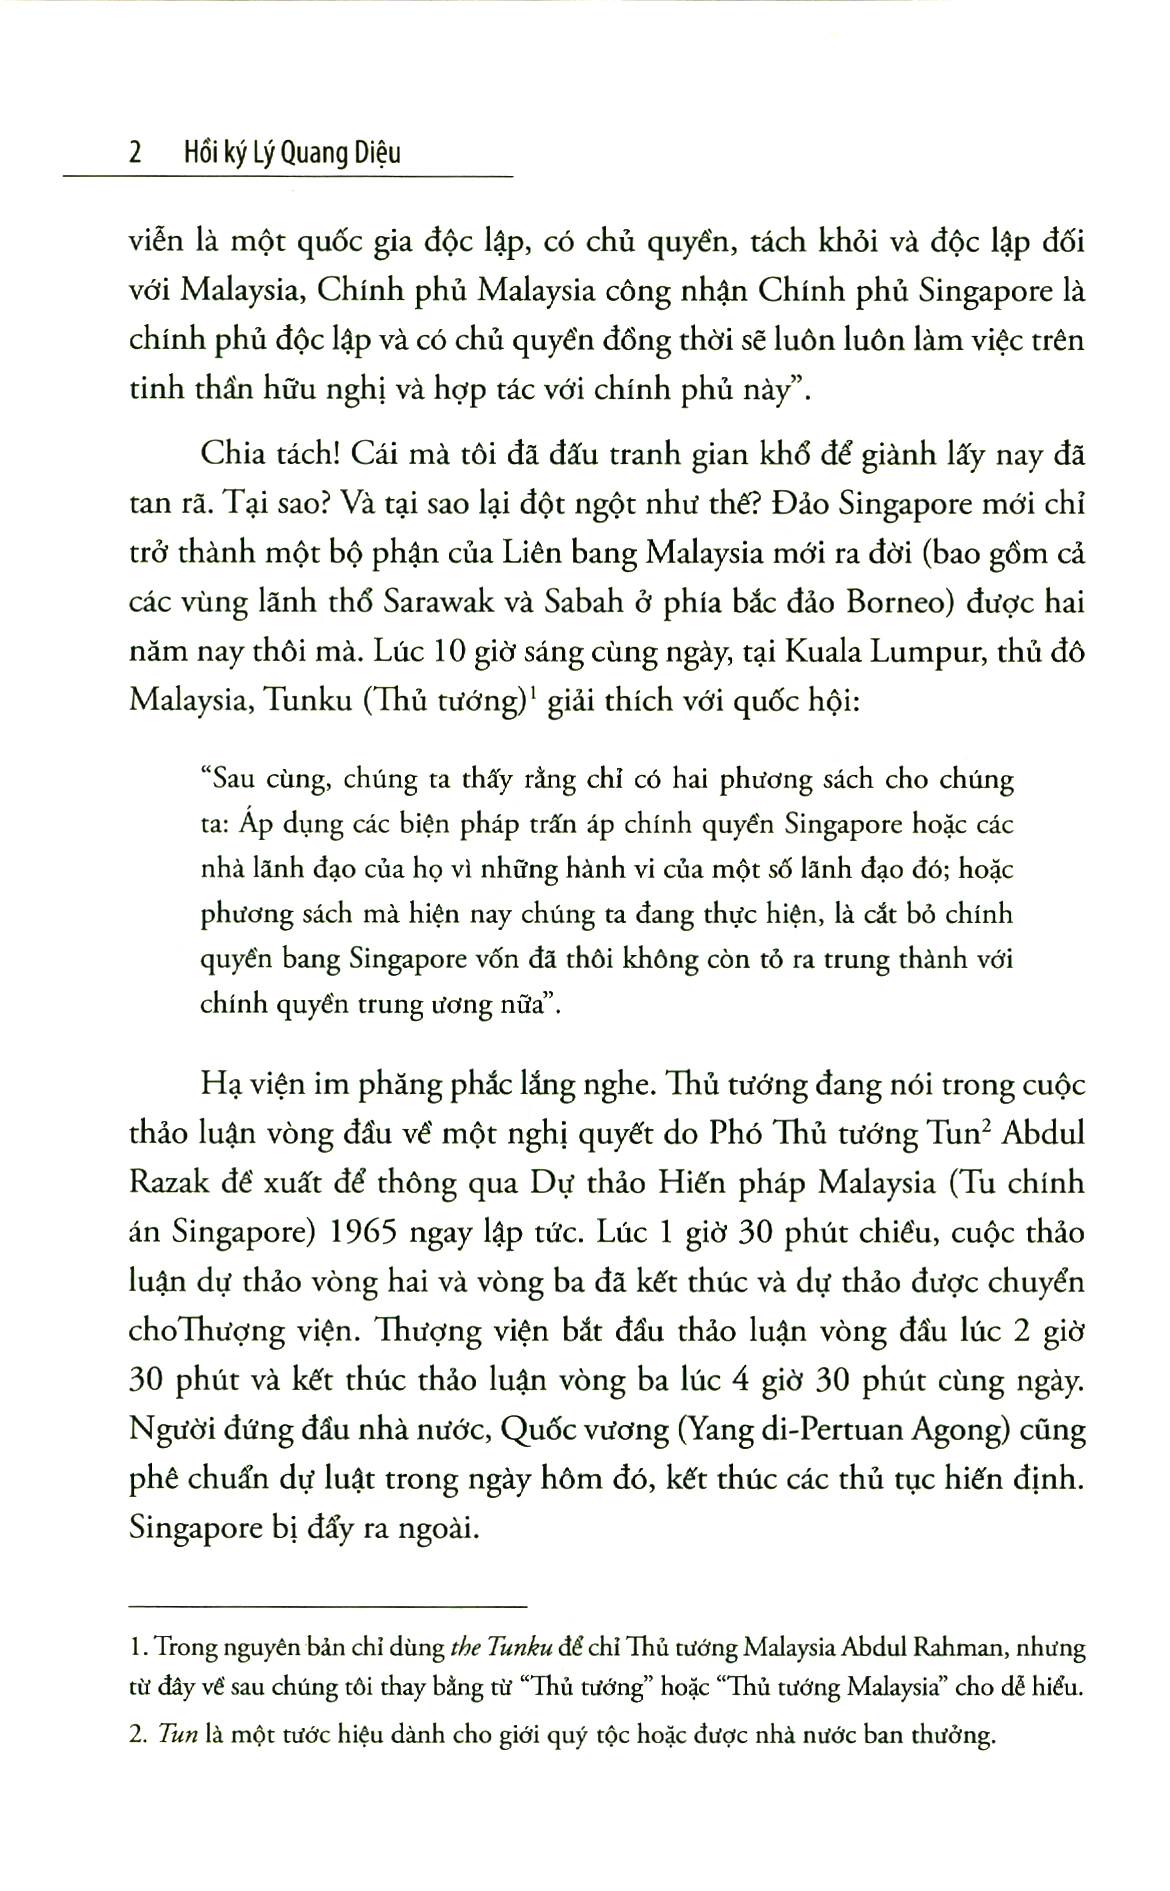 Hồi Ký Lý Quang Diệu - Tập 1: Câu Chuyện Singapore PDF